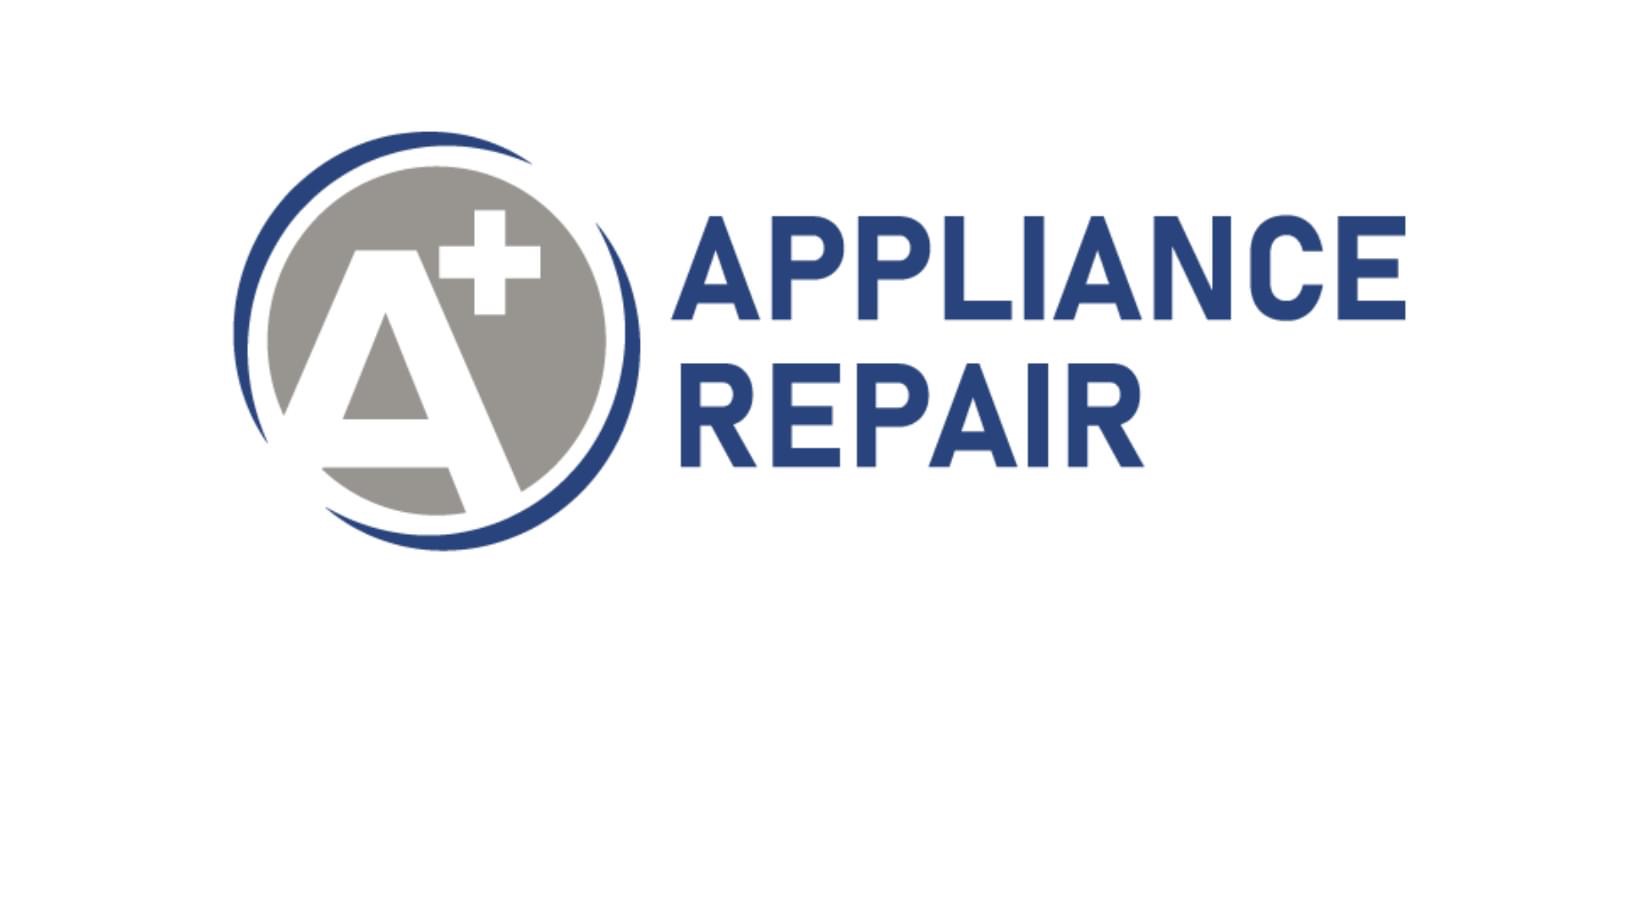 A+ Appliance Repair Logo